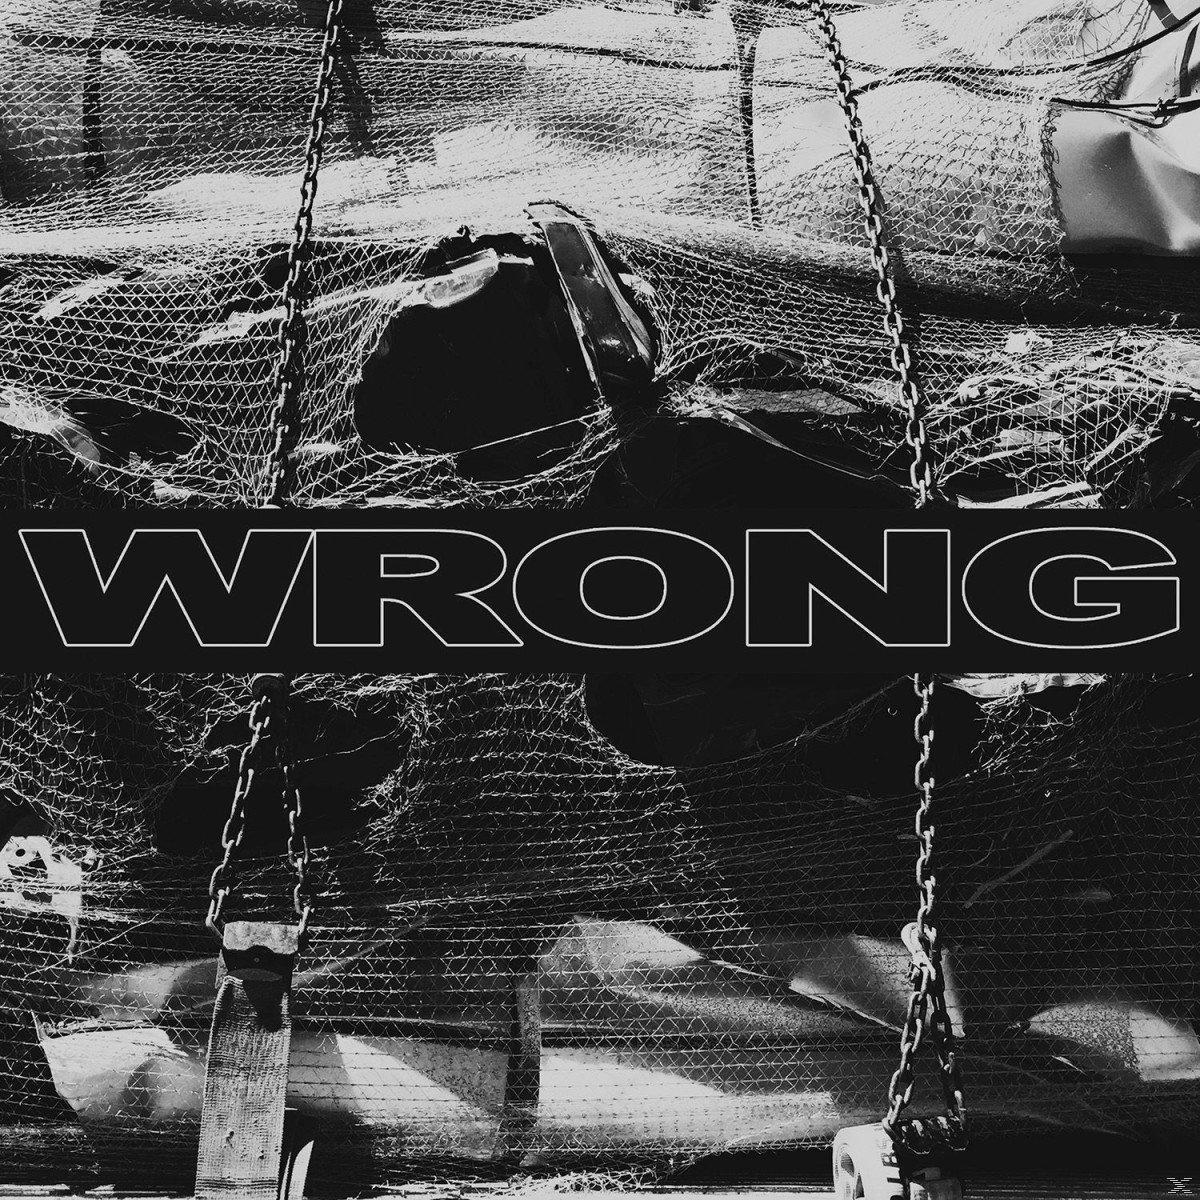 The Wrong - Wrong (CD) 